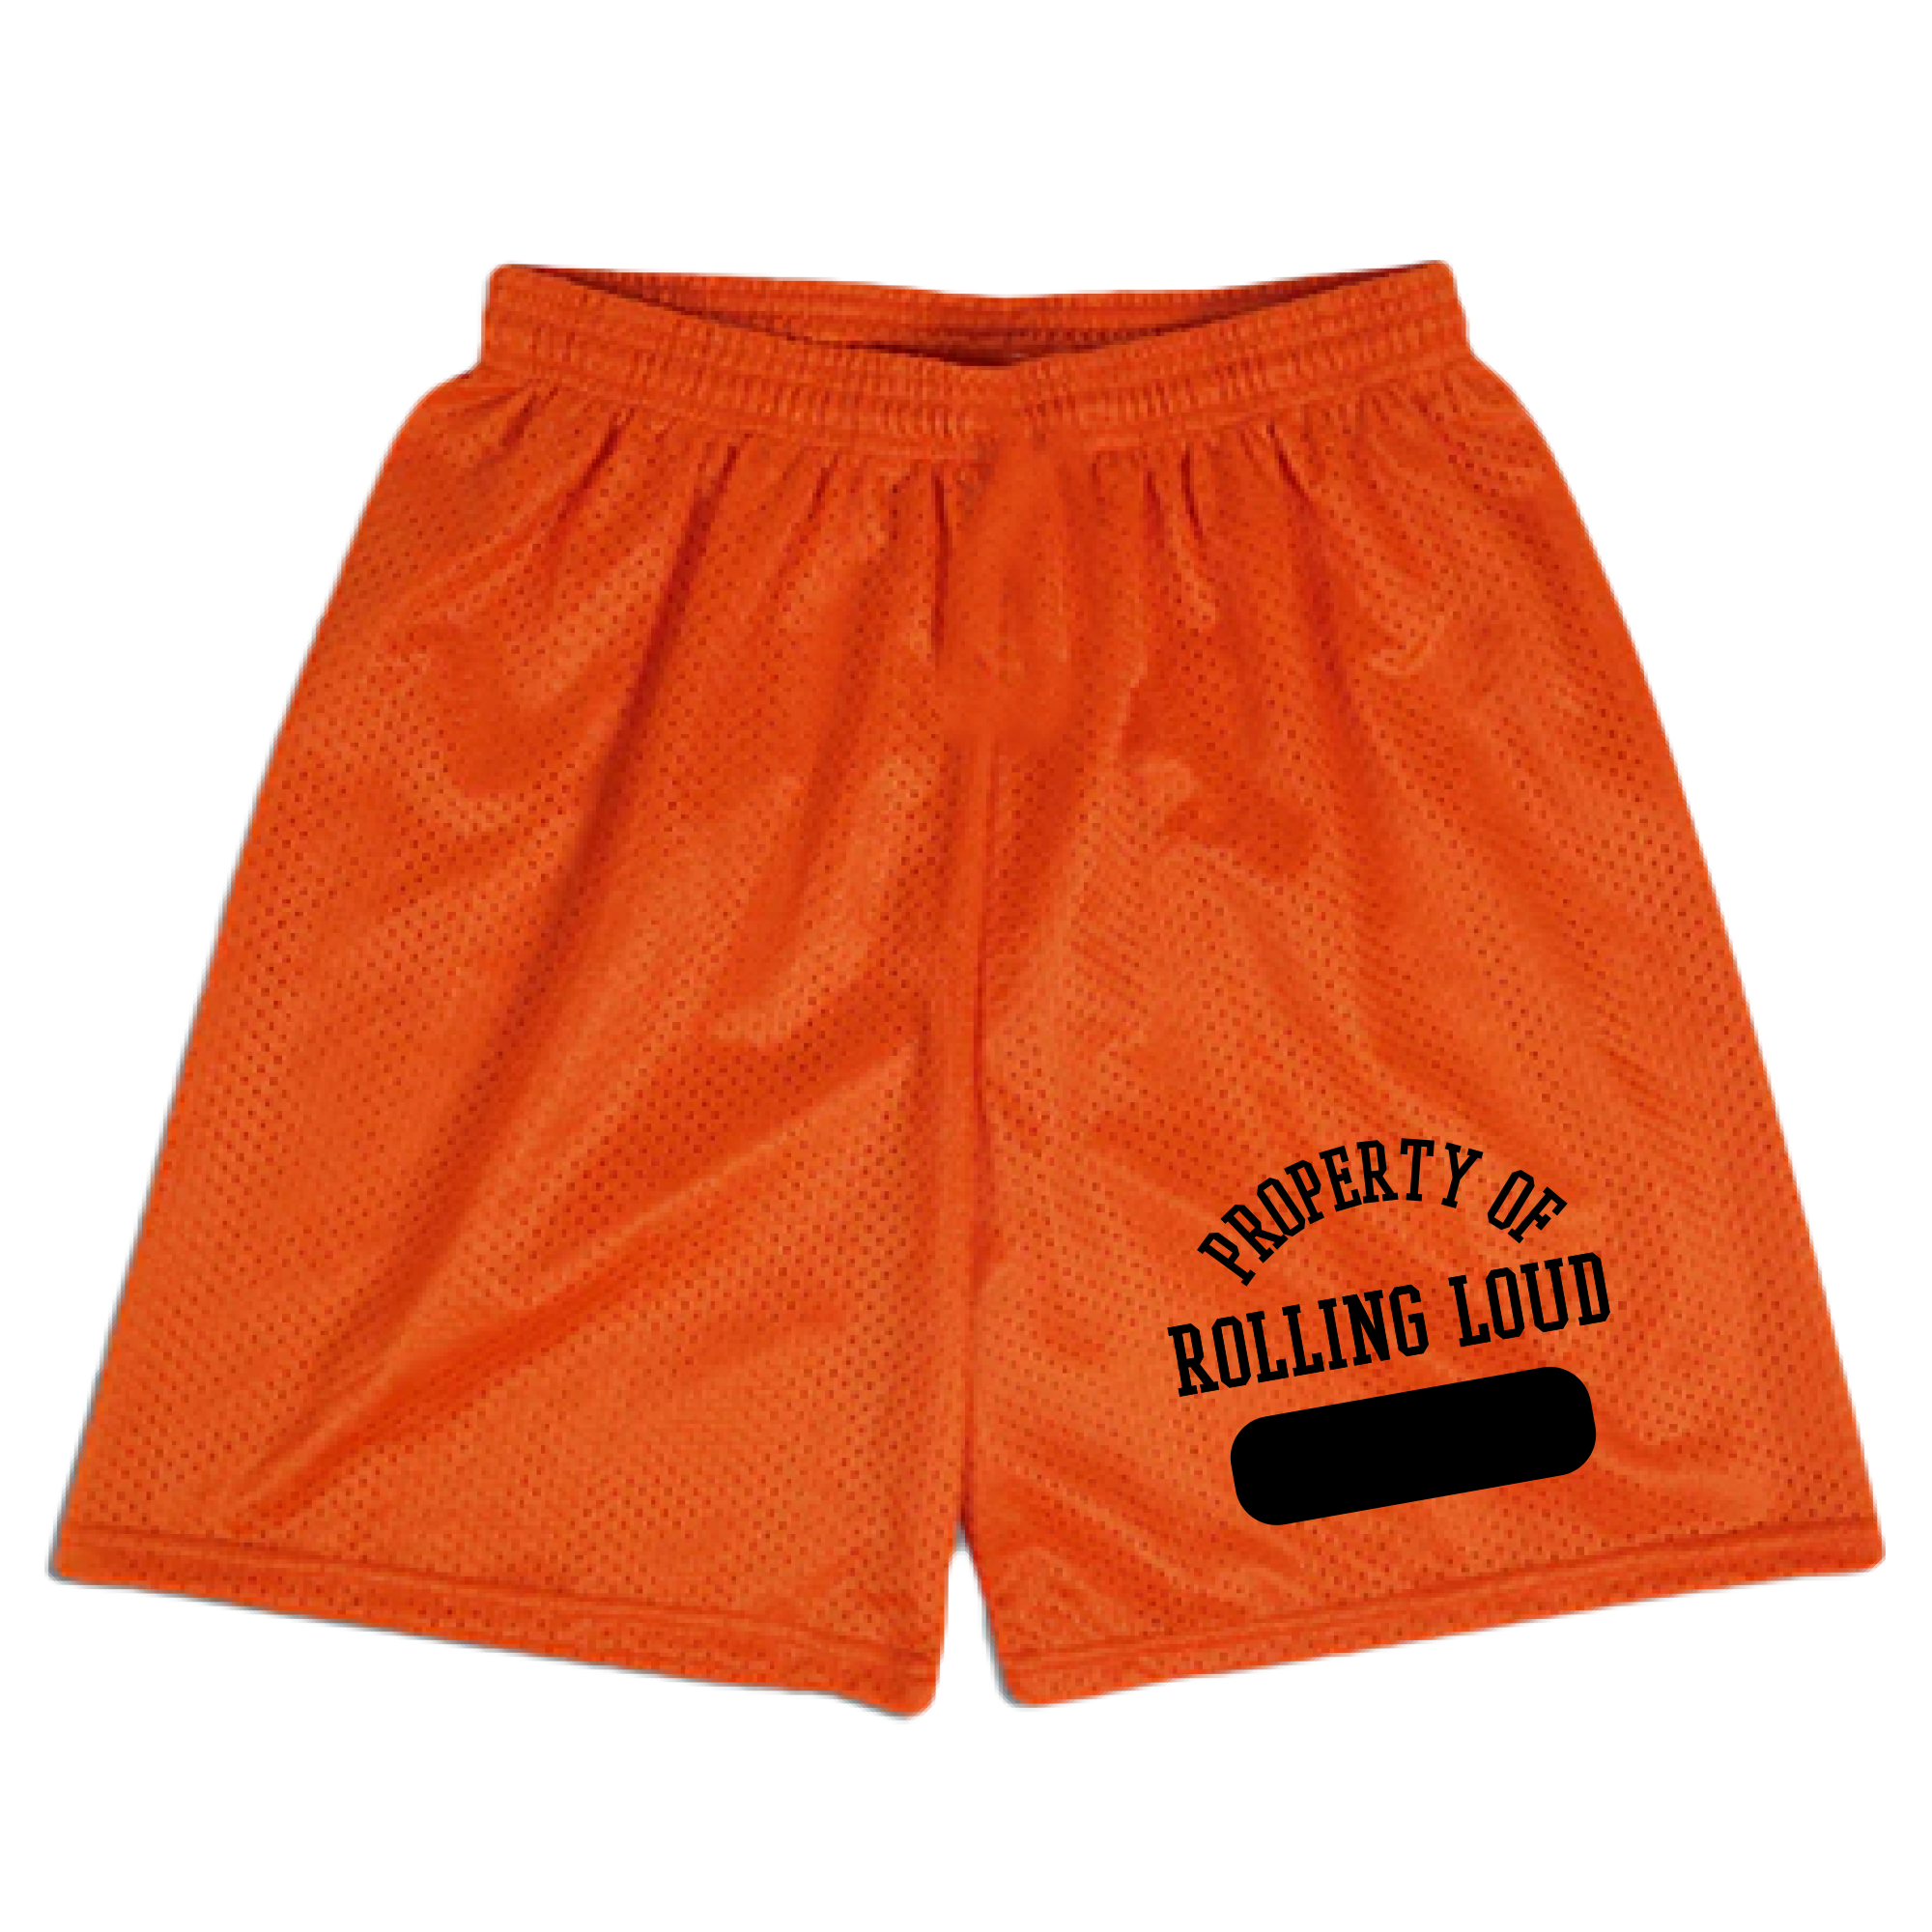 RL 24 Property Of Orange Shorts